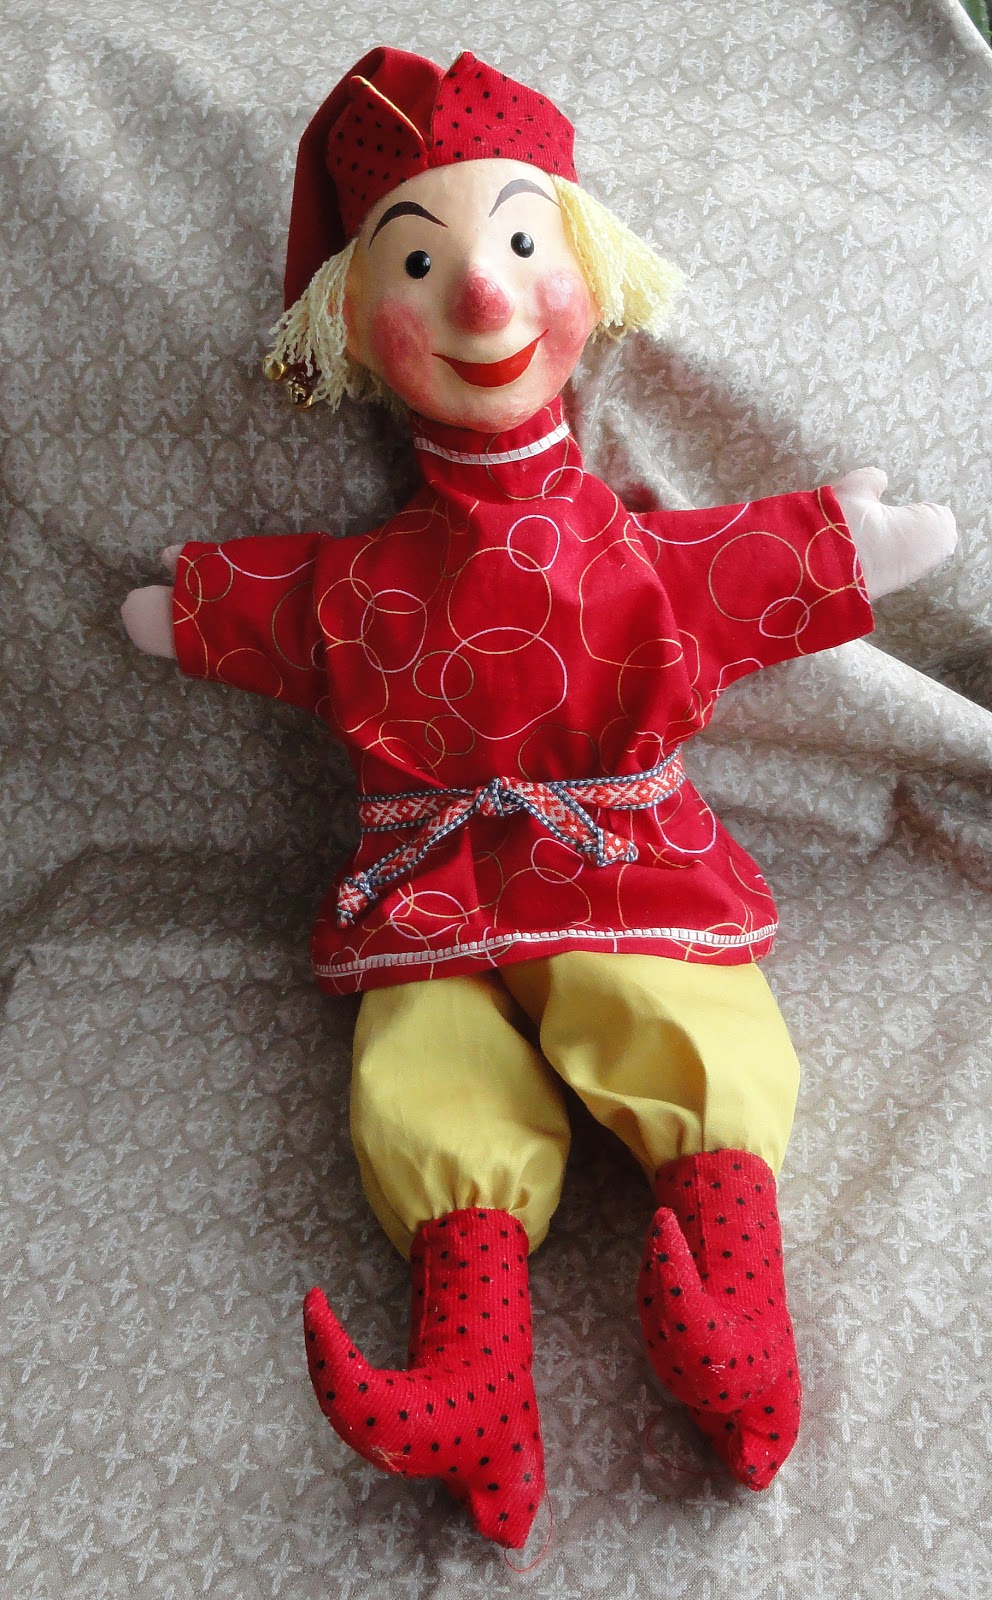 Домашний кукольный театр или как сделать куклу Петрушку своими руками